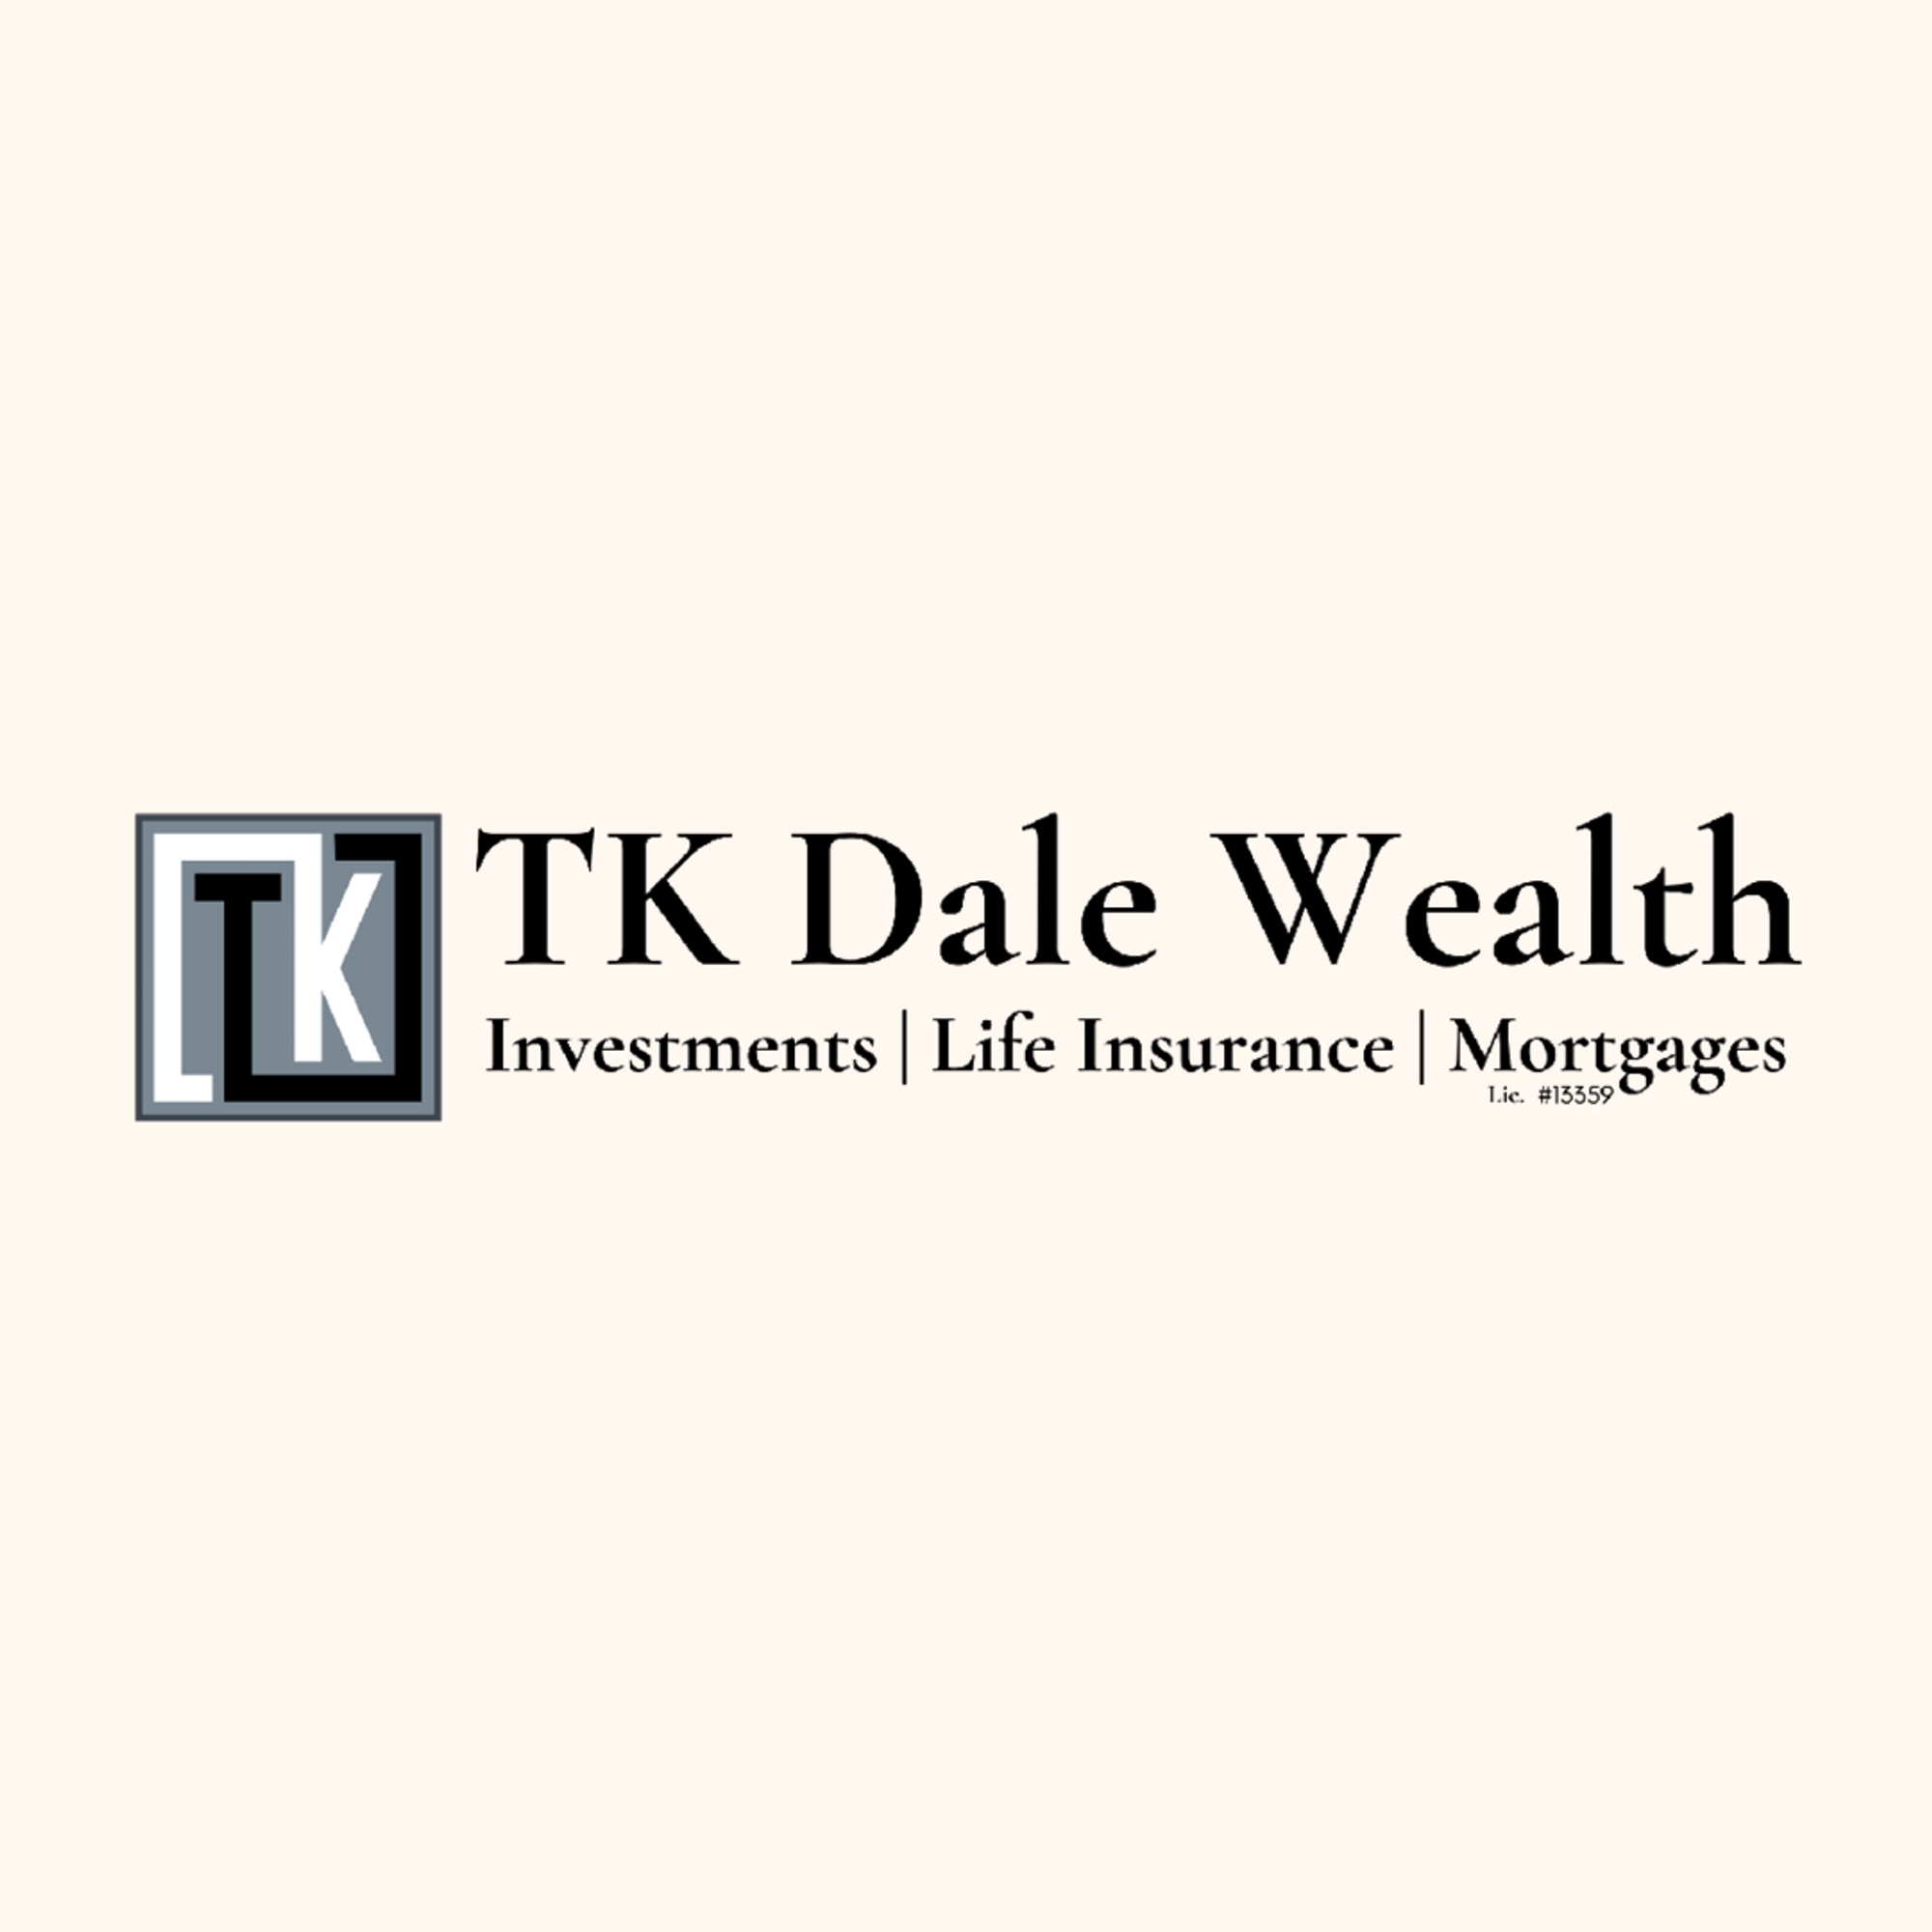 TK Dale Wealth